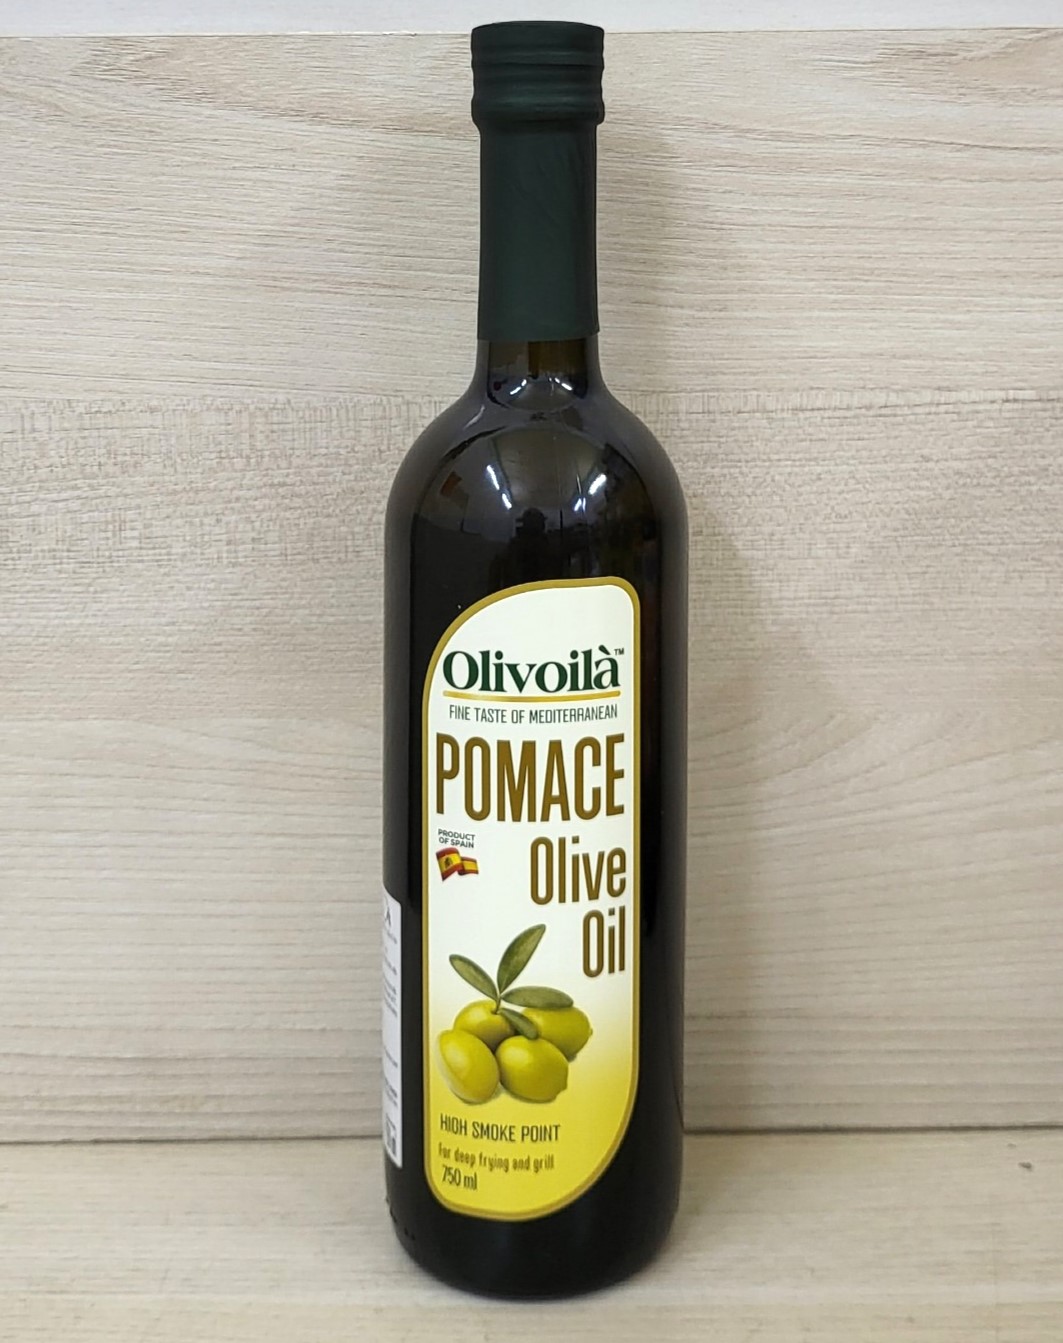 OLIVOILA chai PMC LỚN 750ml DẦU Ô LIU NGUYÊN CHẤT TBN Extra Virgin Olive